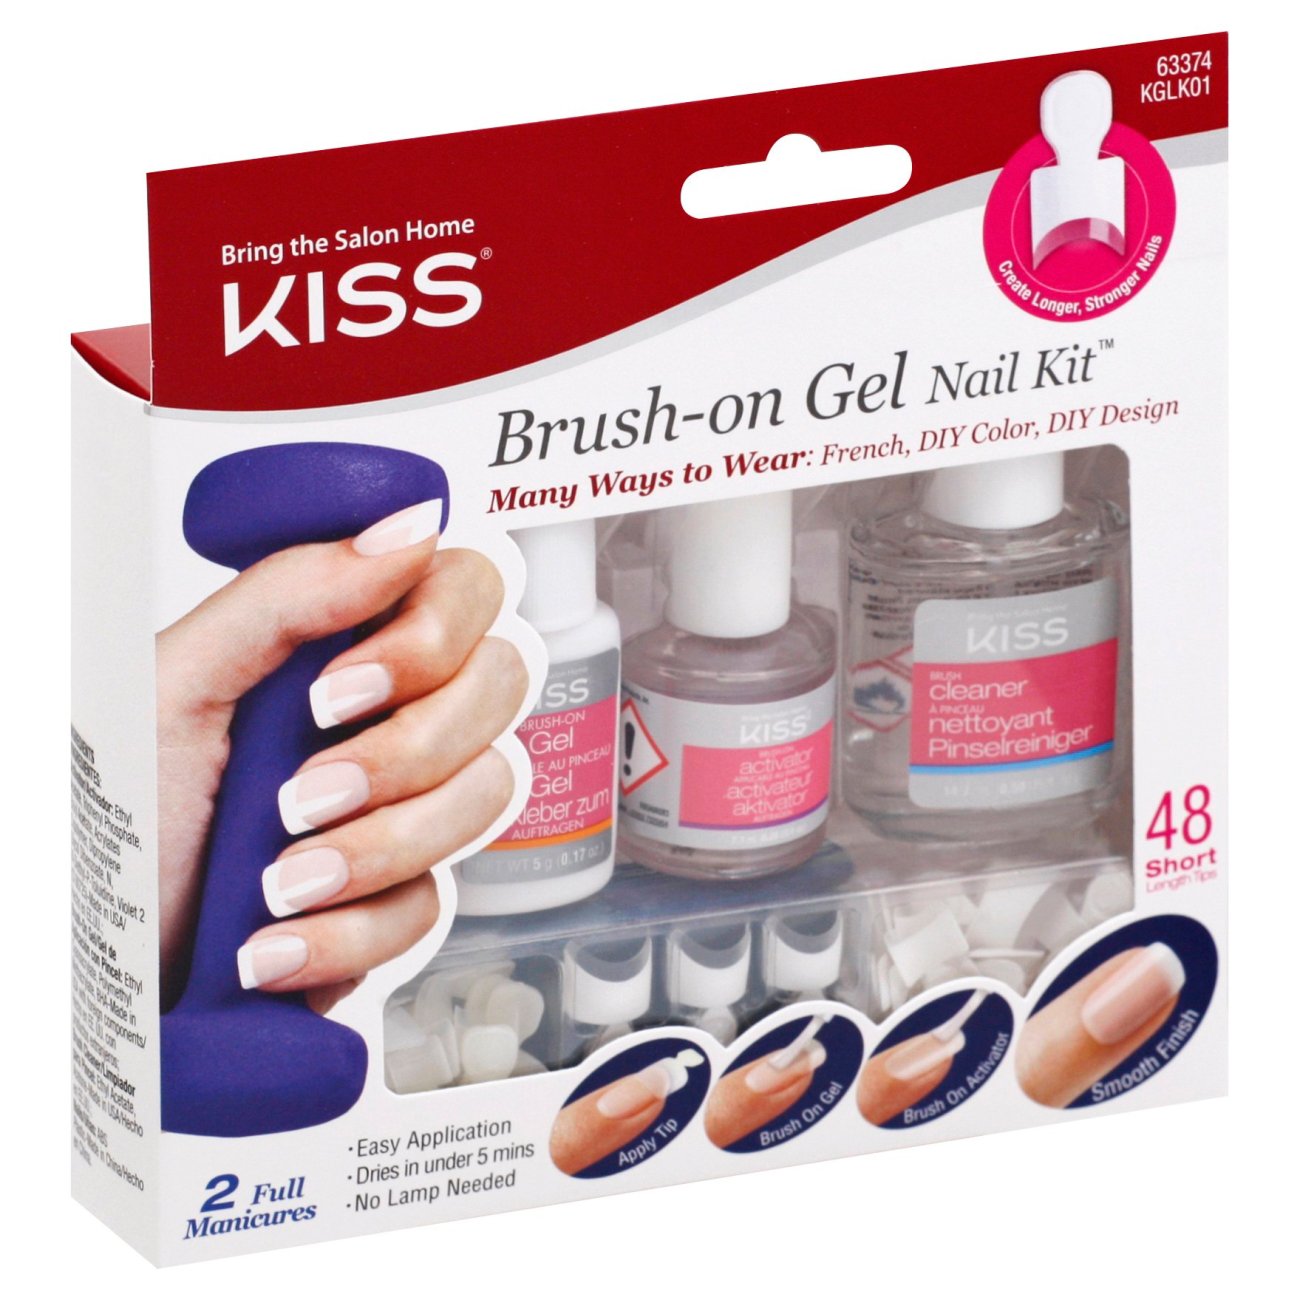 Kiss Brushon Gel Nail Kit Shop Nail Sets at HEB